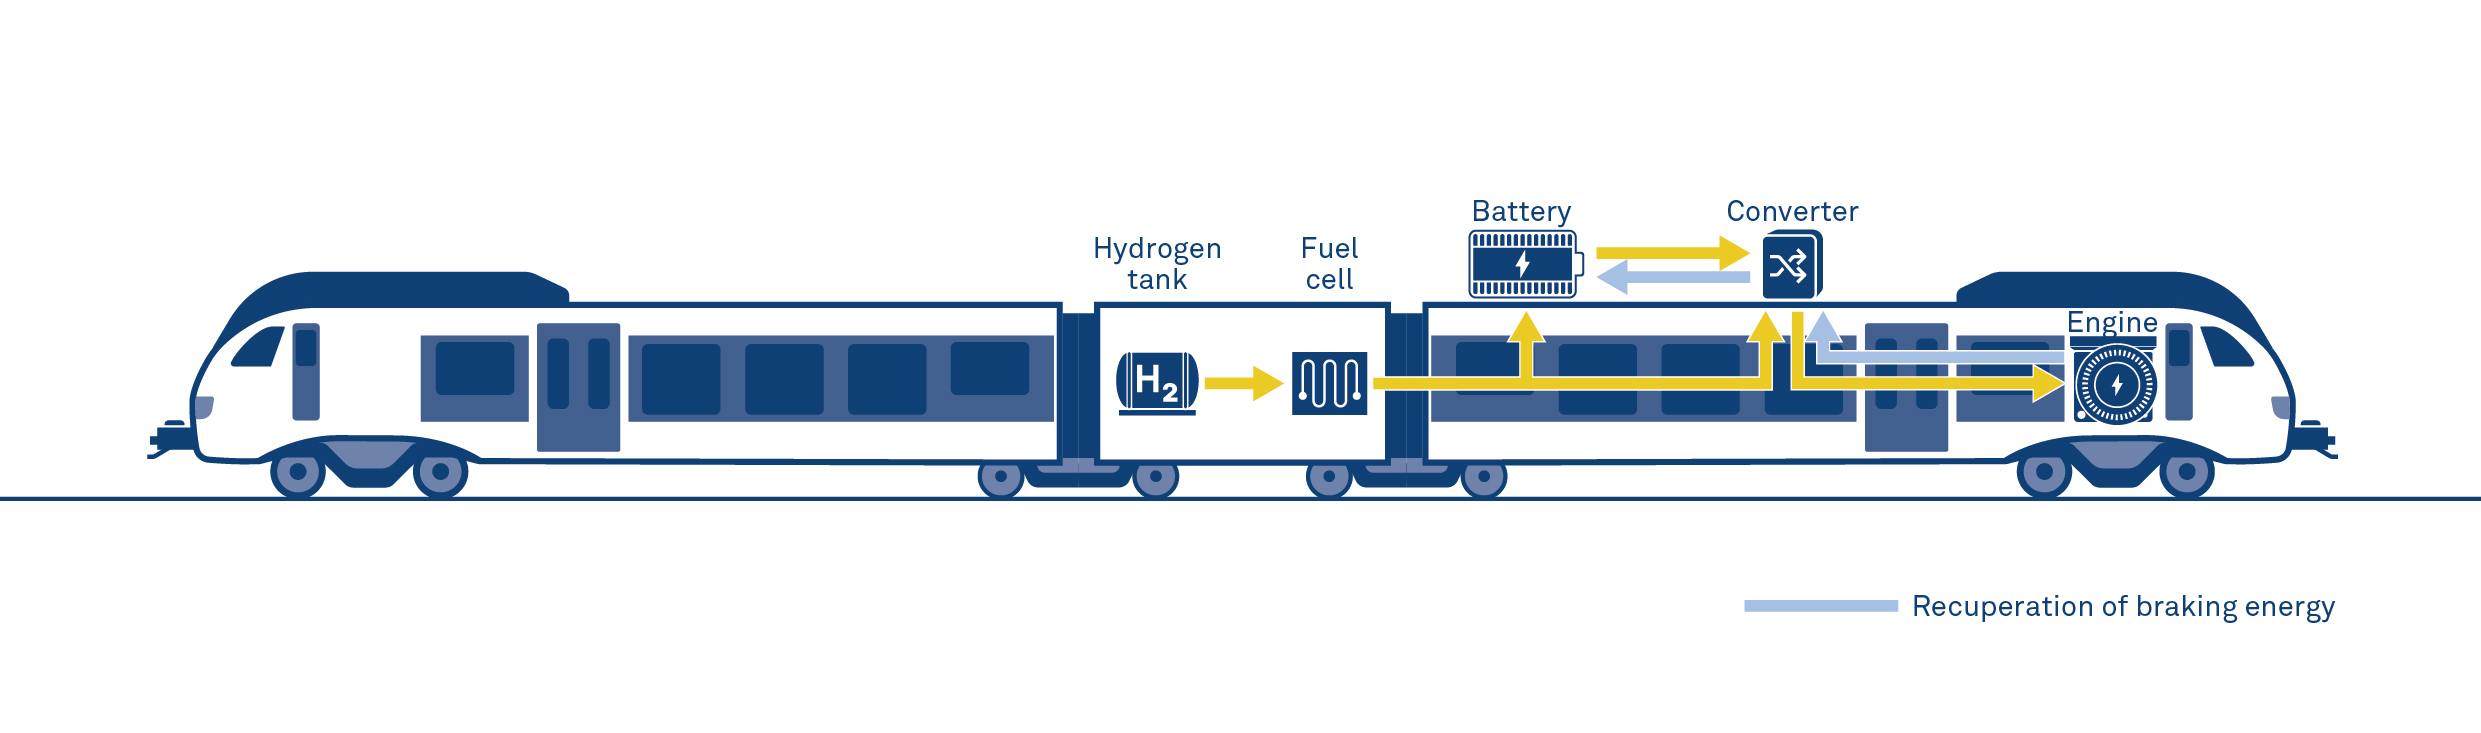 ستادلر يغازل h2 قطار يعمل بالهيدروجين